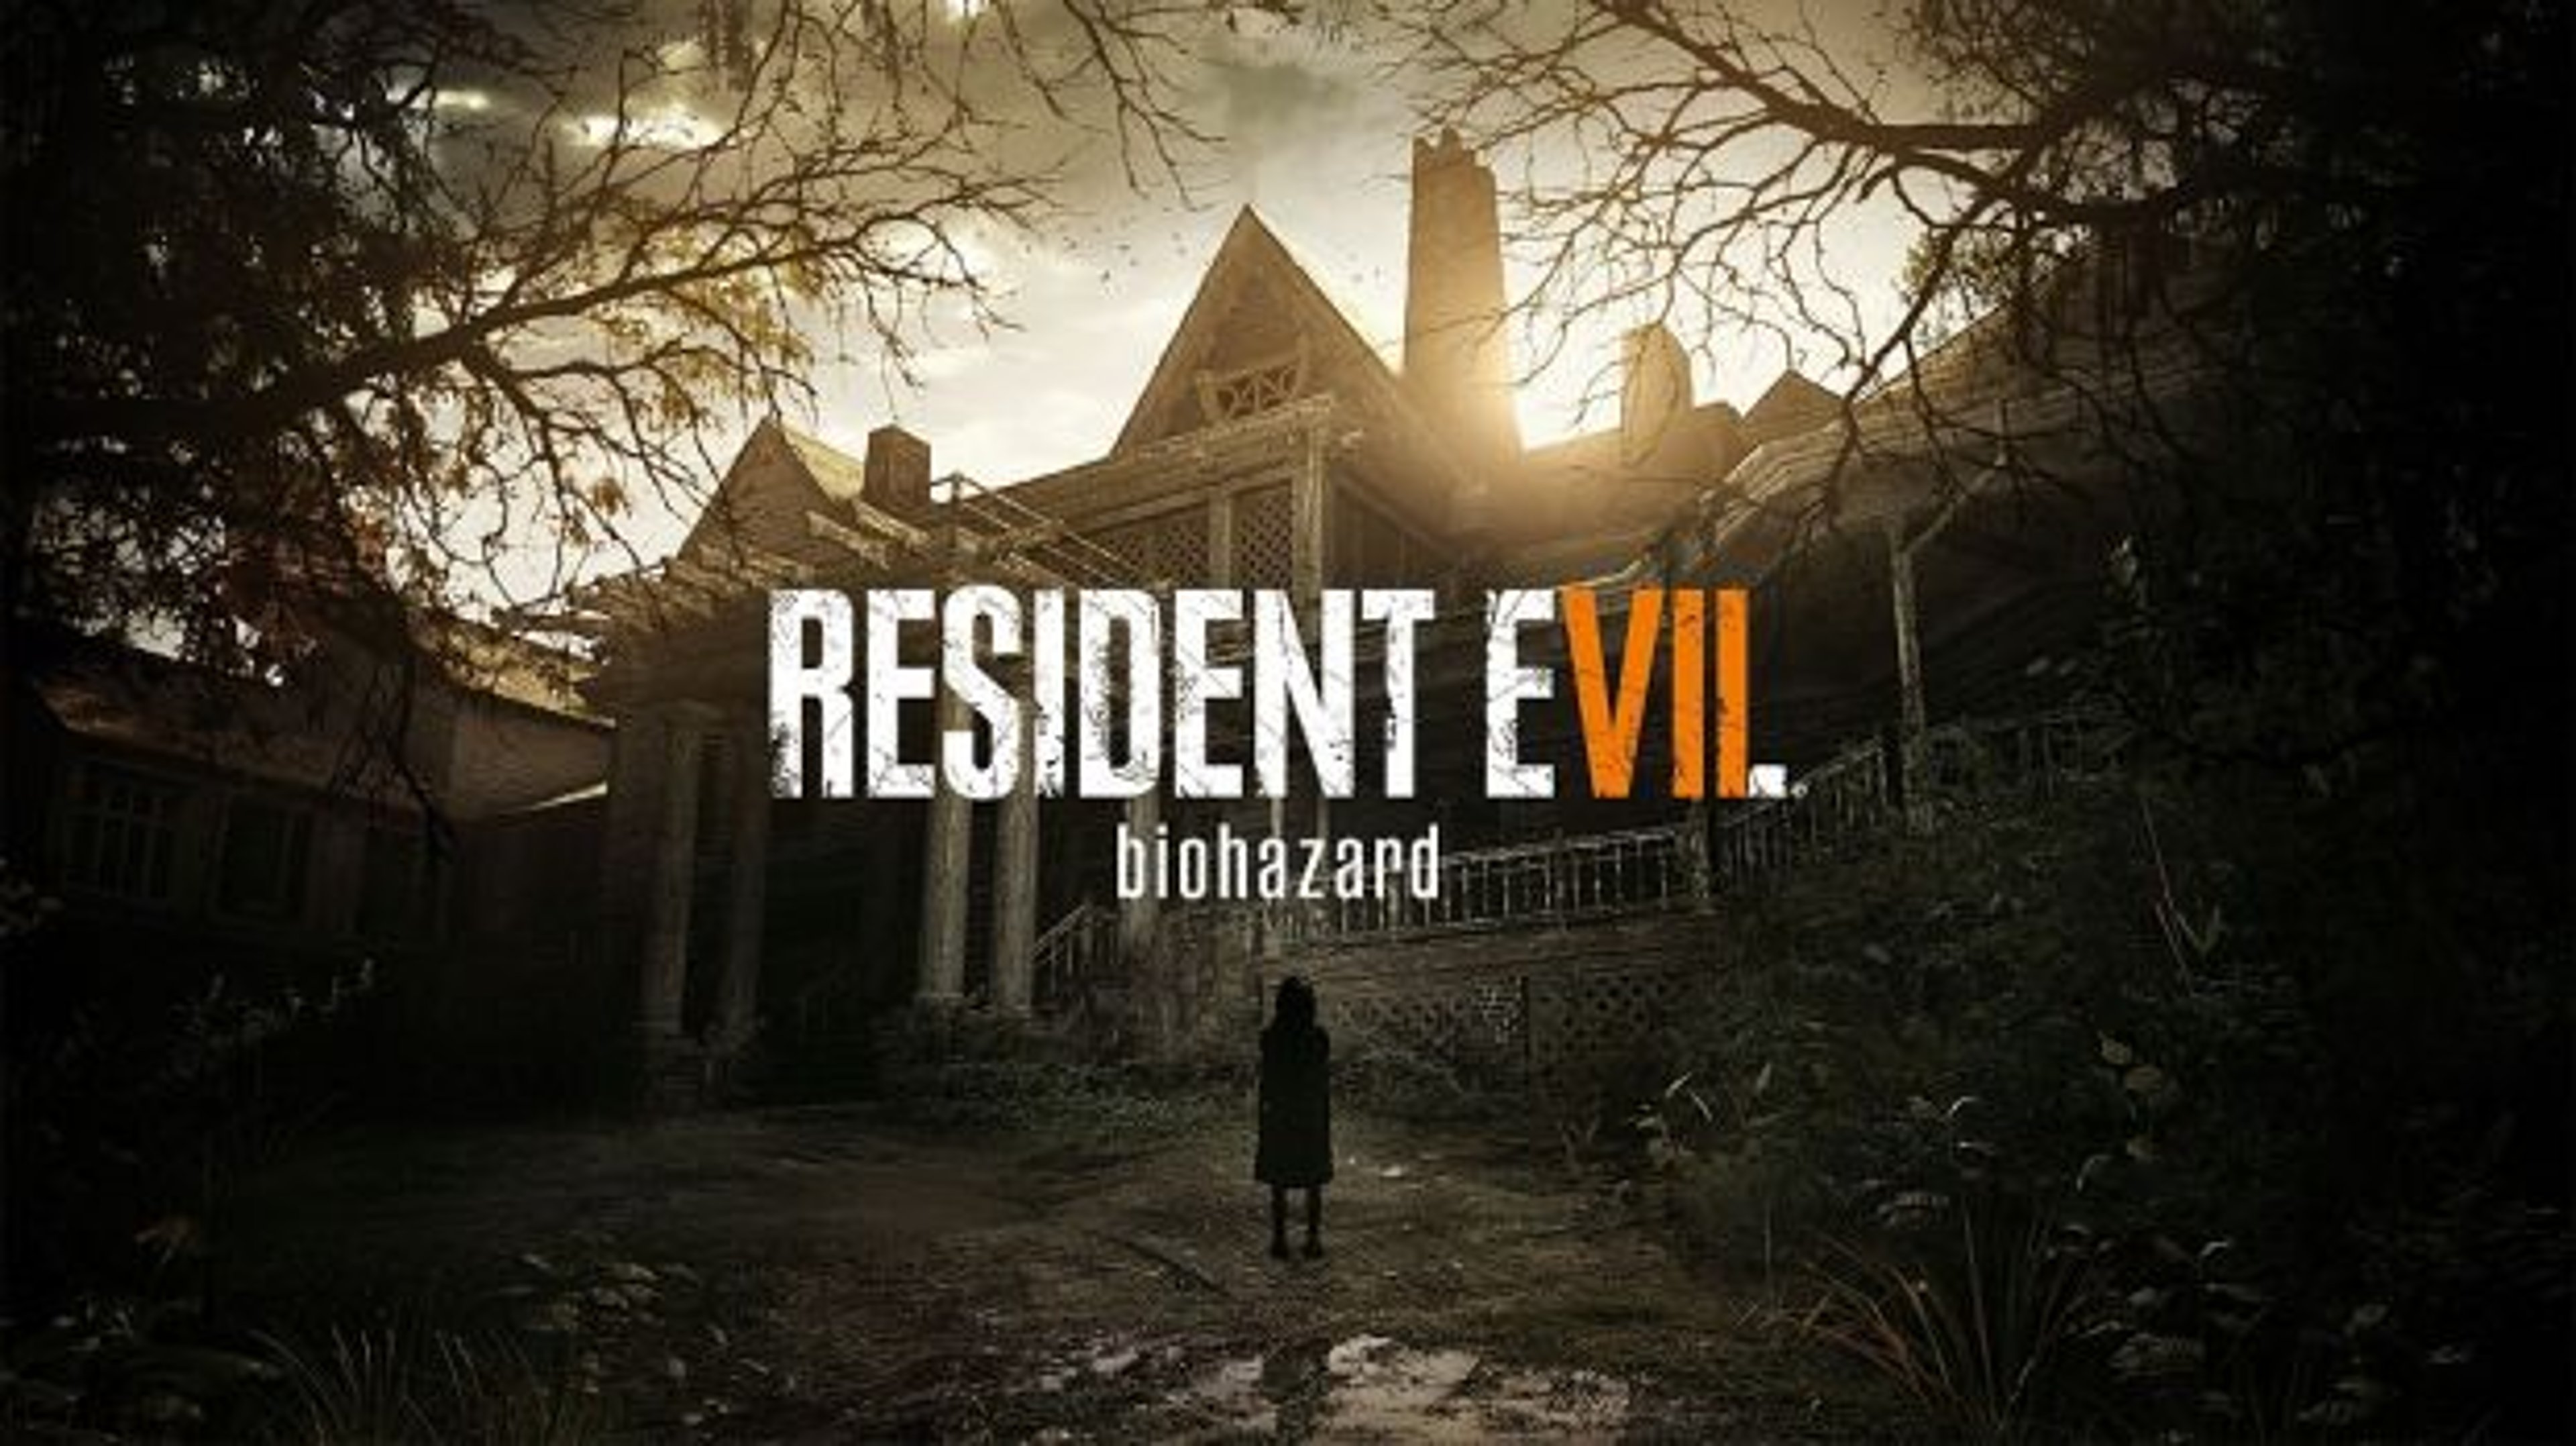 Resident Evil 7 sarà in esclusiva Playstation VR per un anno